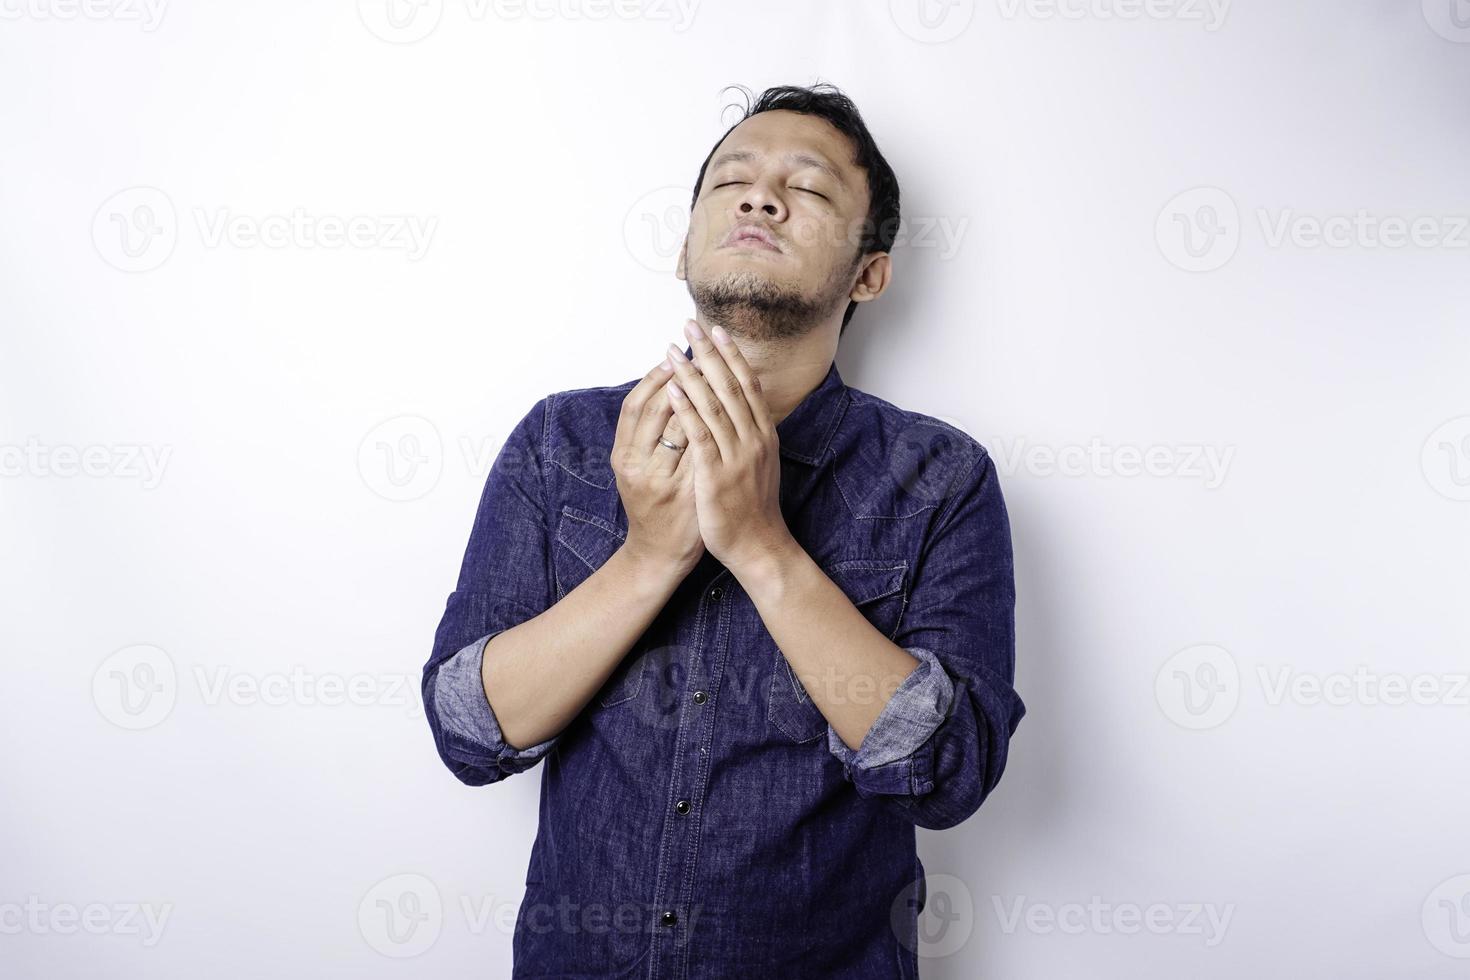 ruhiger spiritueller gutaussehender asiatischer kerl, der mit geschlossenen augen betet. ernster friedlicher junger mann mit sich verbindenden meditierenden händen. Glaubenskonzept foto